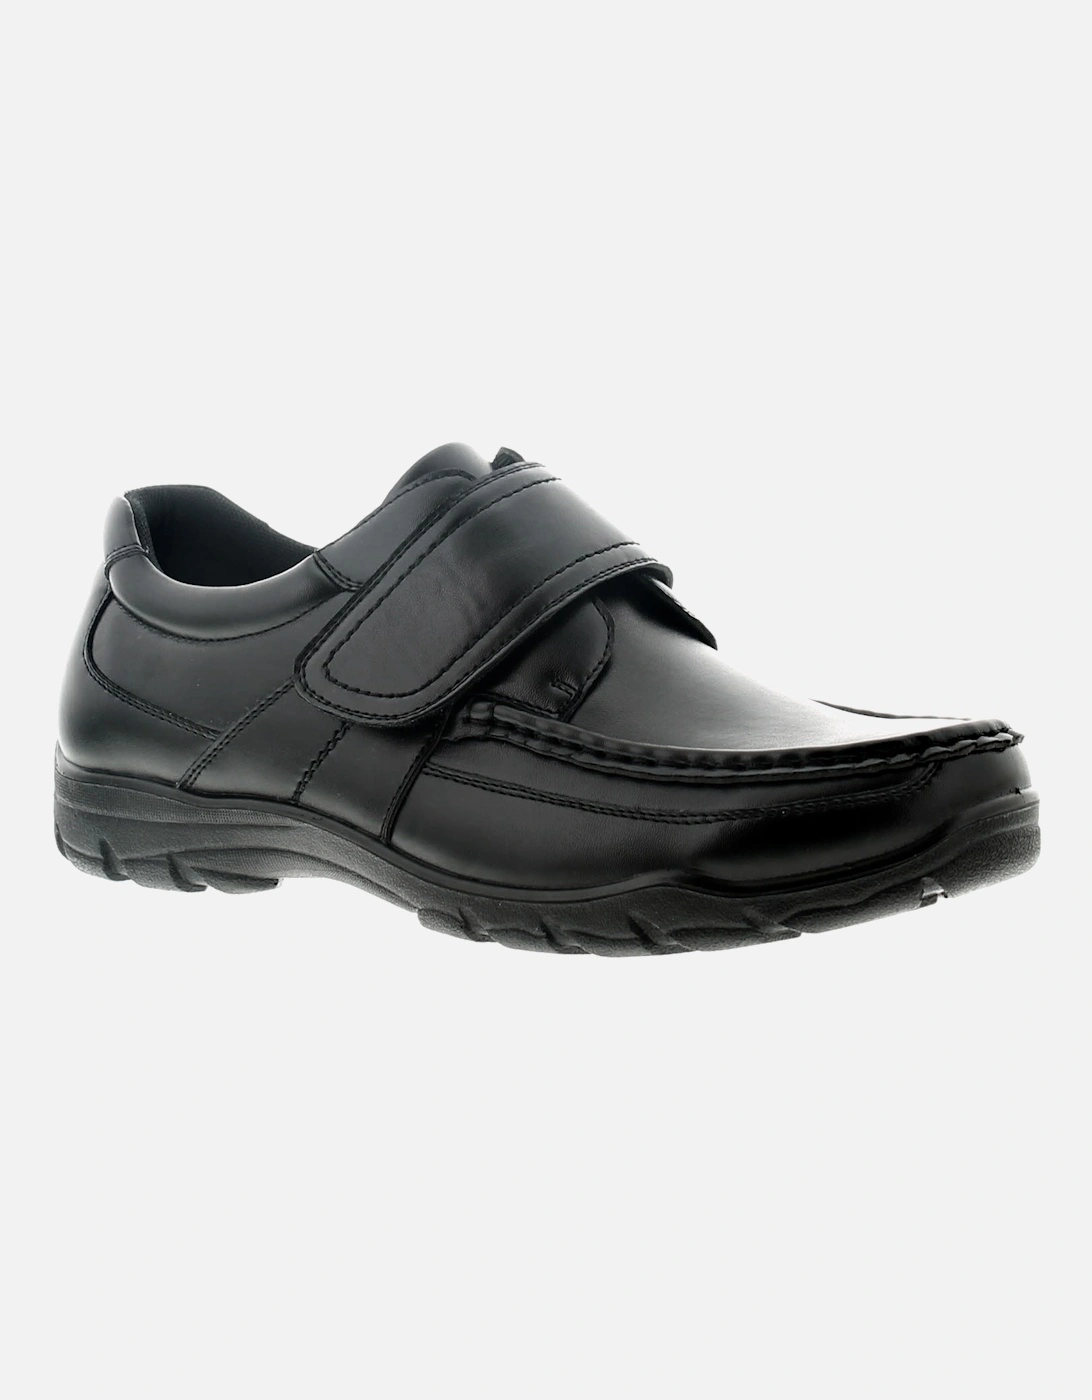 Mens Smart Shoes Rocket V Touch Fastening black UK Size, 6 of 5